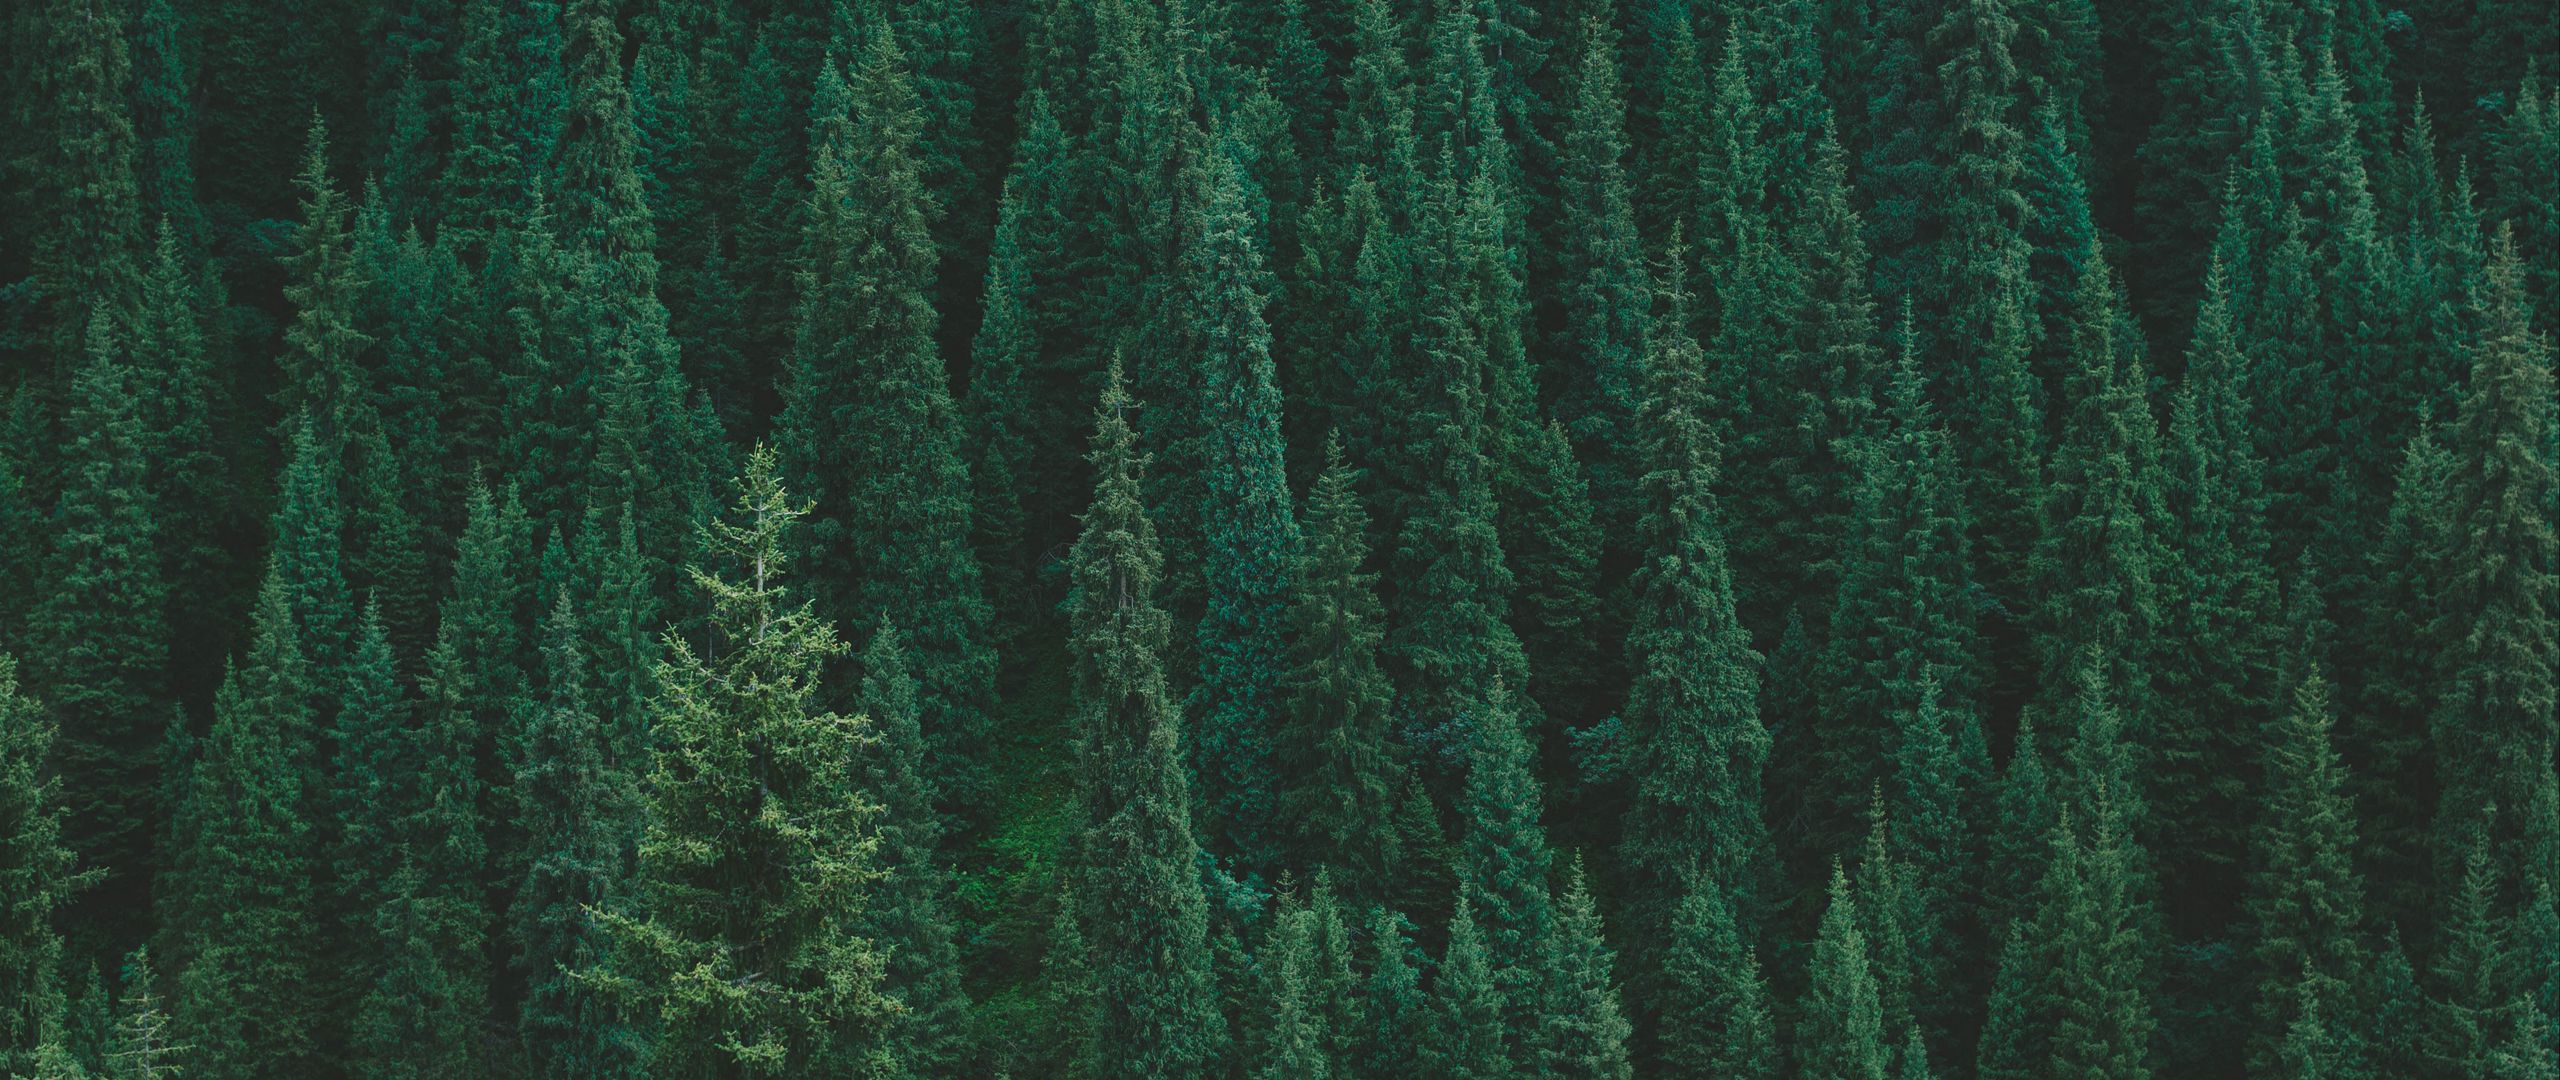 Cây rừng xanh mang đến cho bạn cảm giác bình yên và sự thân thiện. Hãy thưởng thức những hình ảnh tuyệt đẹp của cây rừng xanh và cảm nhận sự yên bình đó.